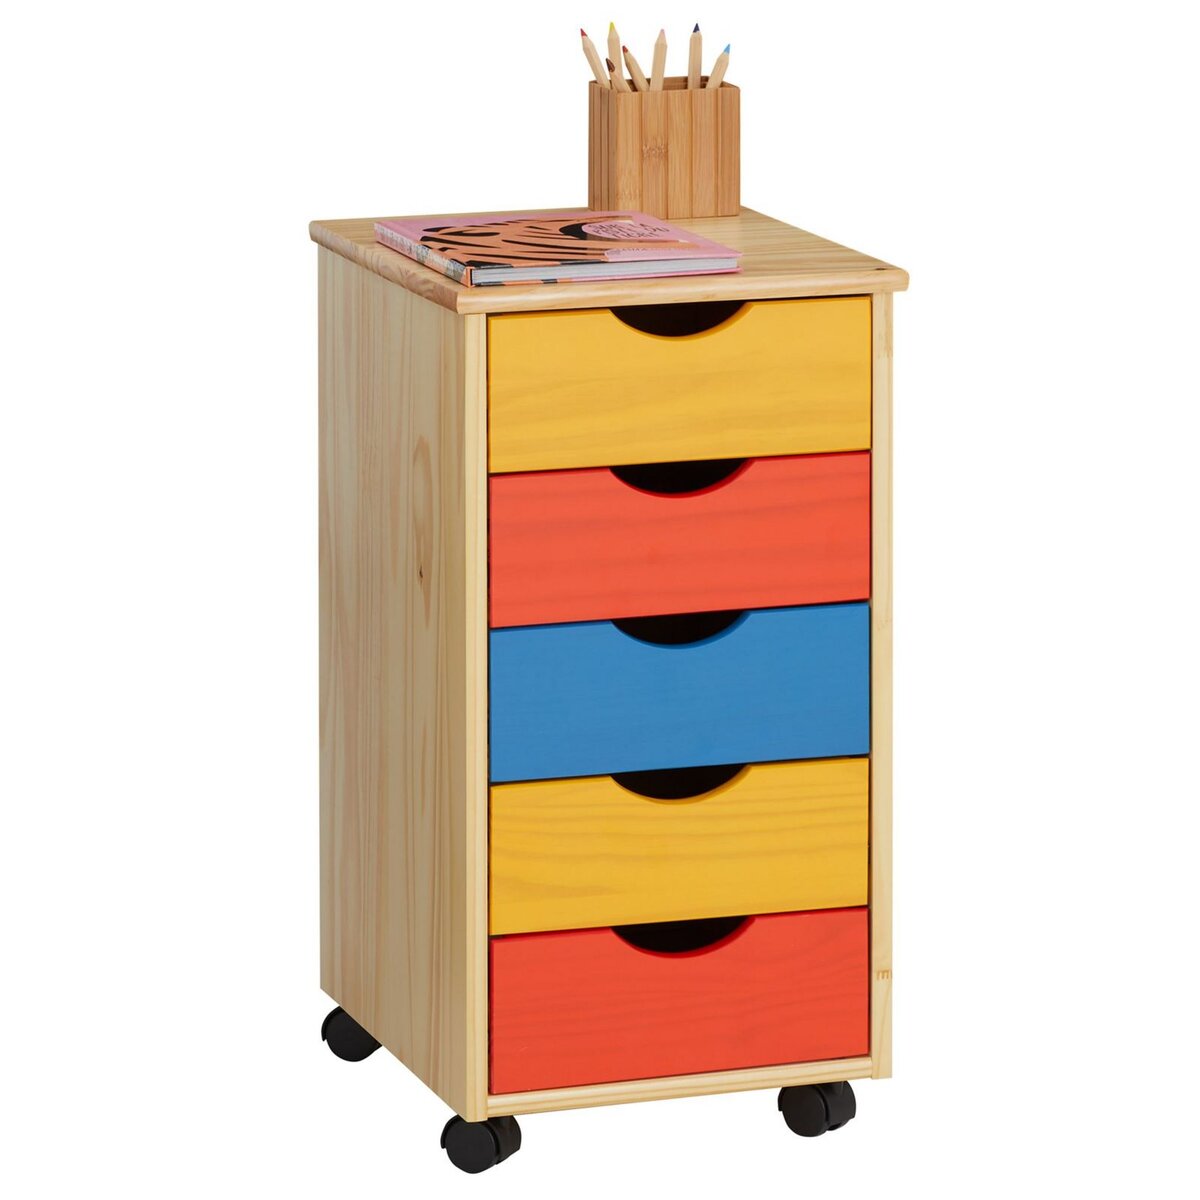 IDIMEX Caisson de bureau LAGOS meuble de rangement sur roulettes avec 5  tiroirs, en pin massif lasuré multicolore jaune rose et bleu pas cher 